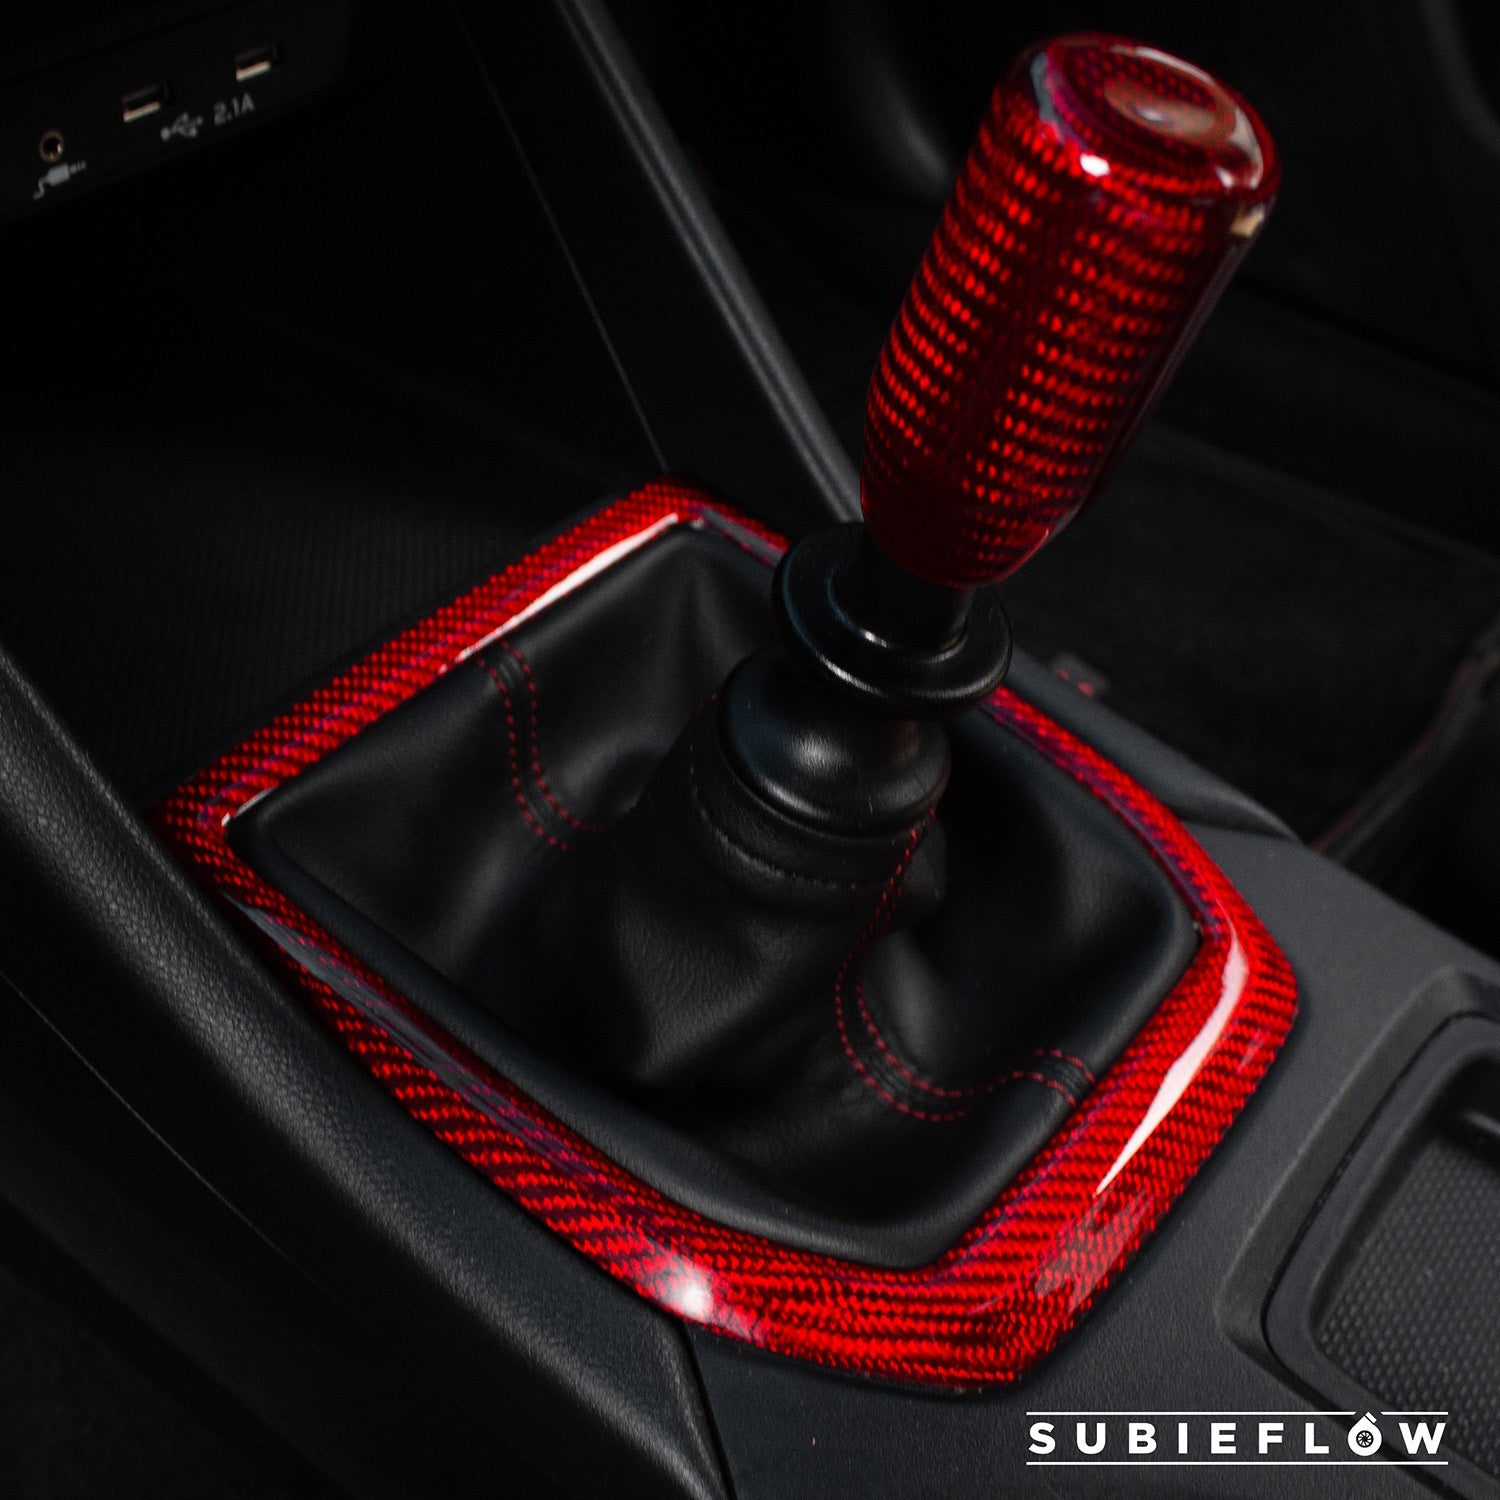 2022-25 Subaru WRX Red Carbon Fiber Shifter Trim Cover - SubieFlow